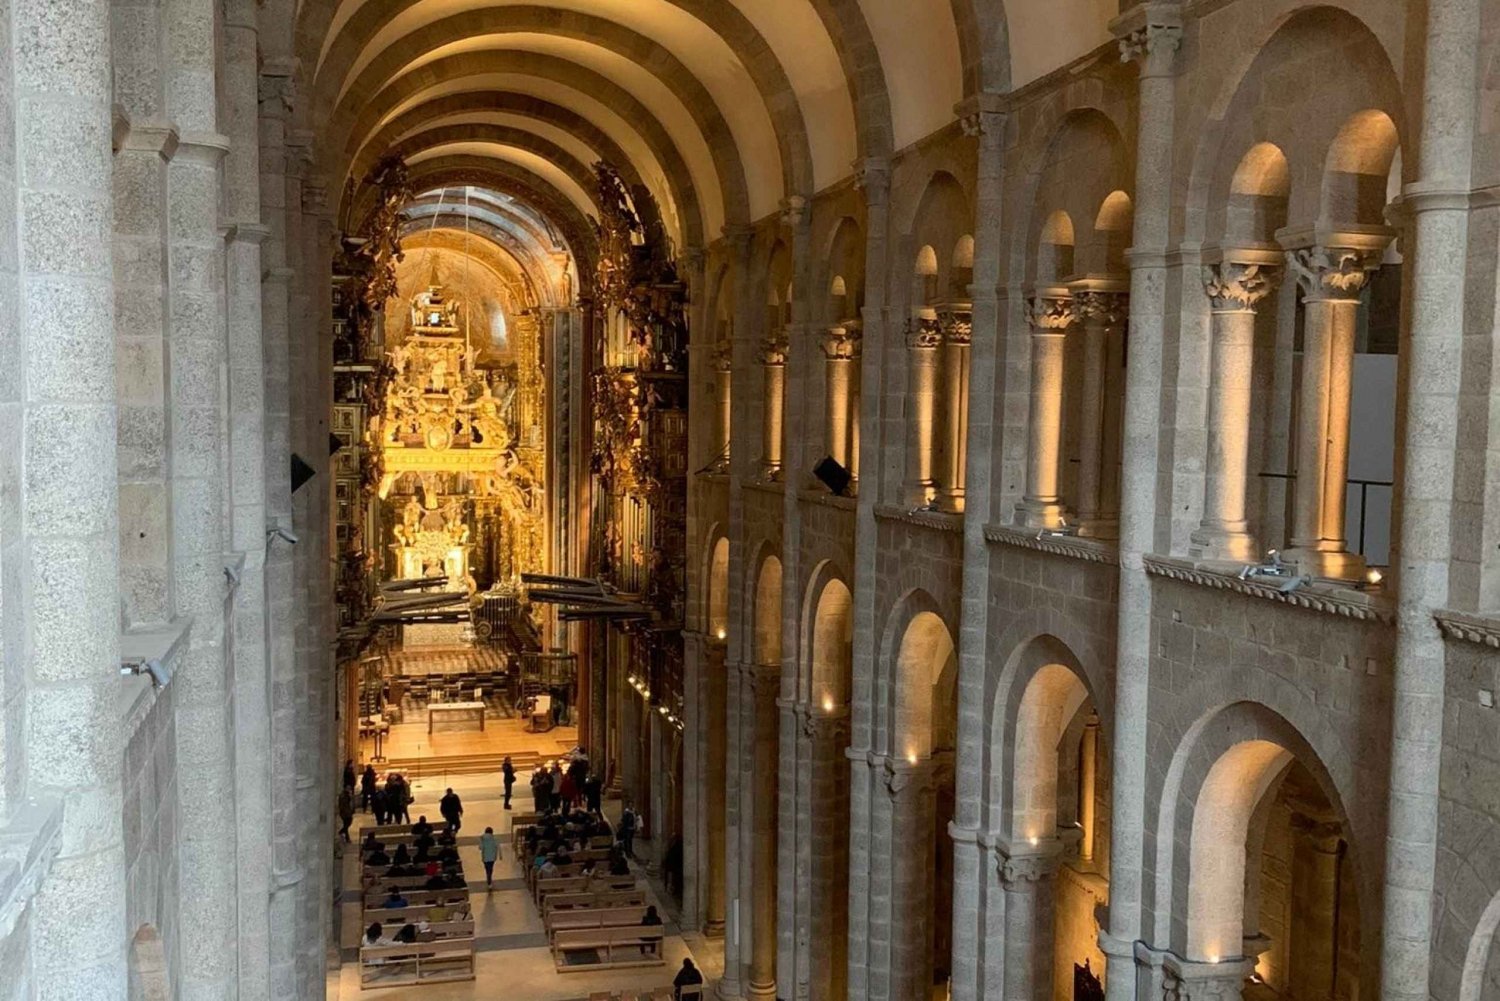 Passeio pela Catedral de Santiago com telhados e o Pórtico da Glória